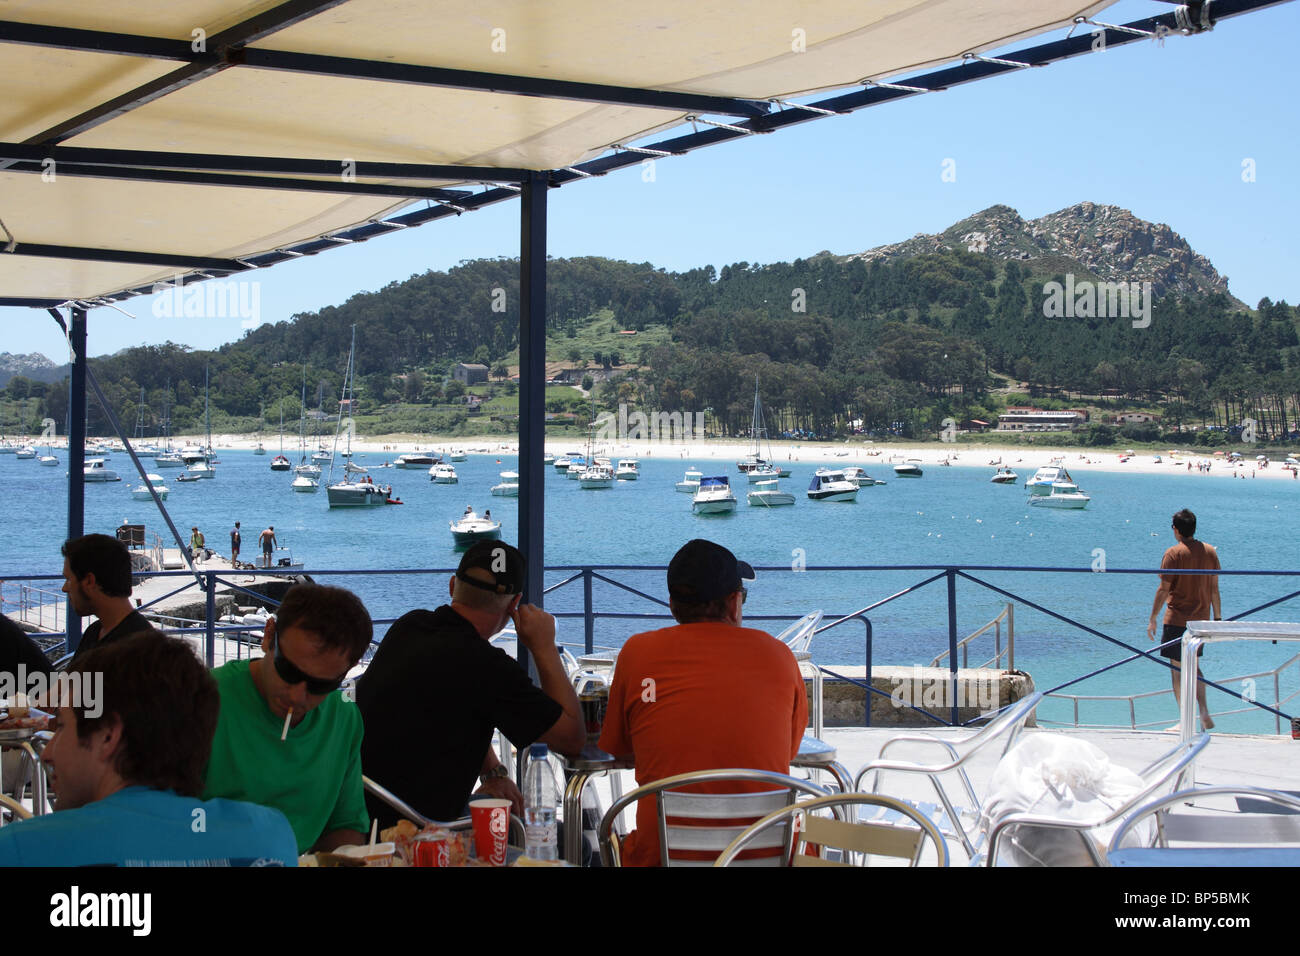 Le persone al cafe esterno tavoli del ristorante sulla spiaggia, Isla de Monte Faro, Isole Cies, Vigo, Galizia, Spagna, spiaggia e barche Foto Stock